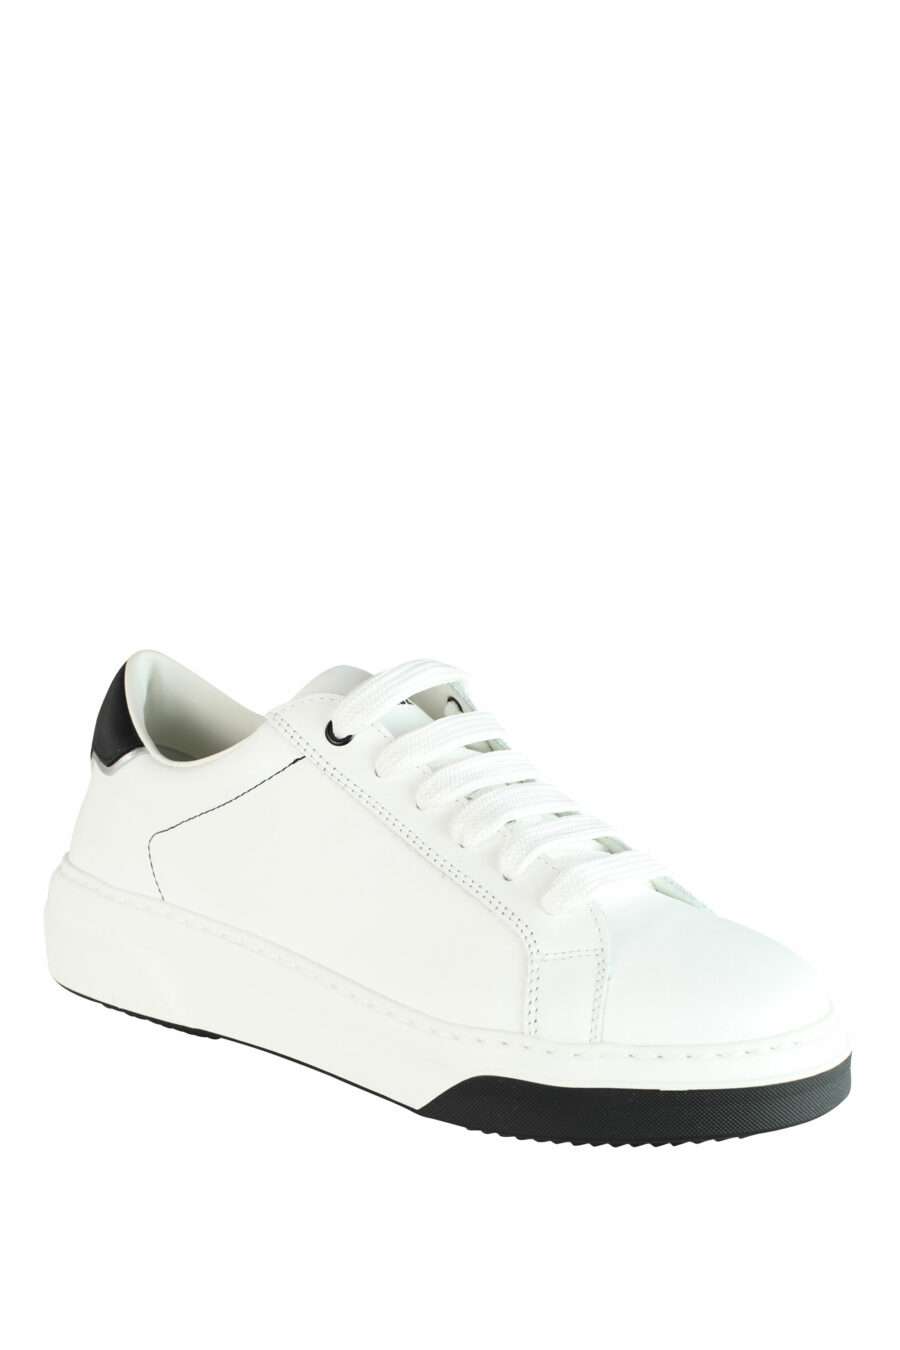 Zapatillas blancas "bumper" con detalles negros y logo - IMG 1426